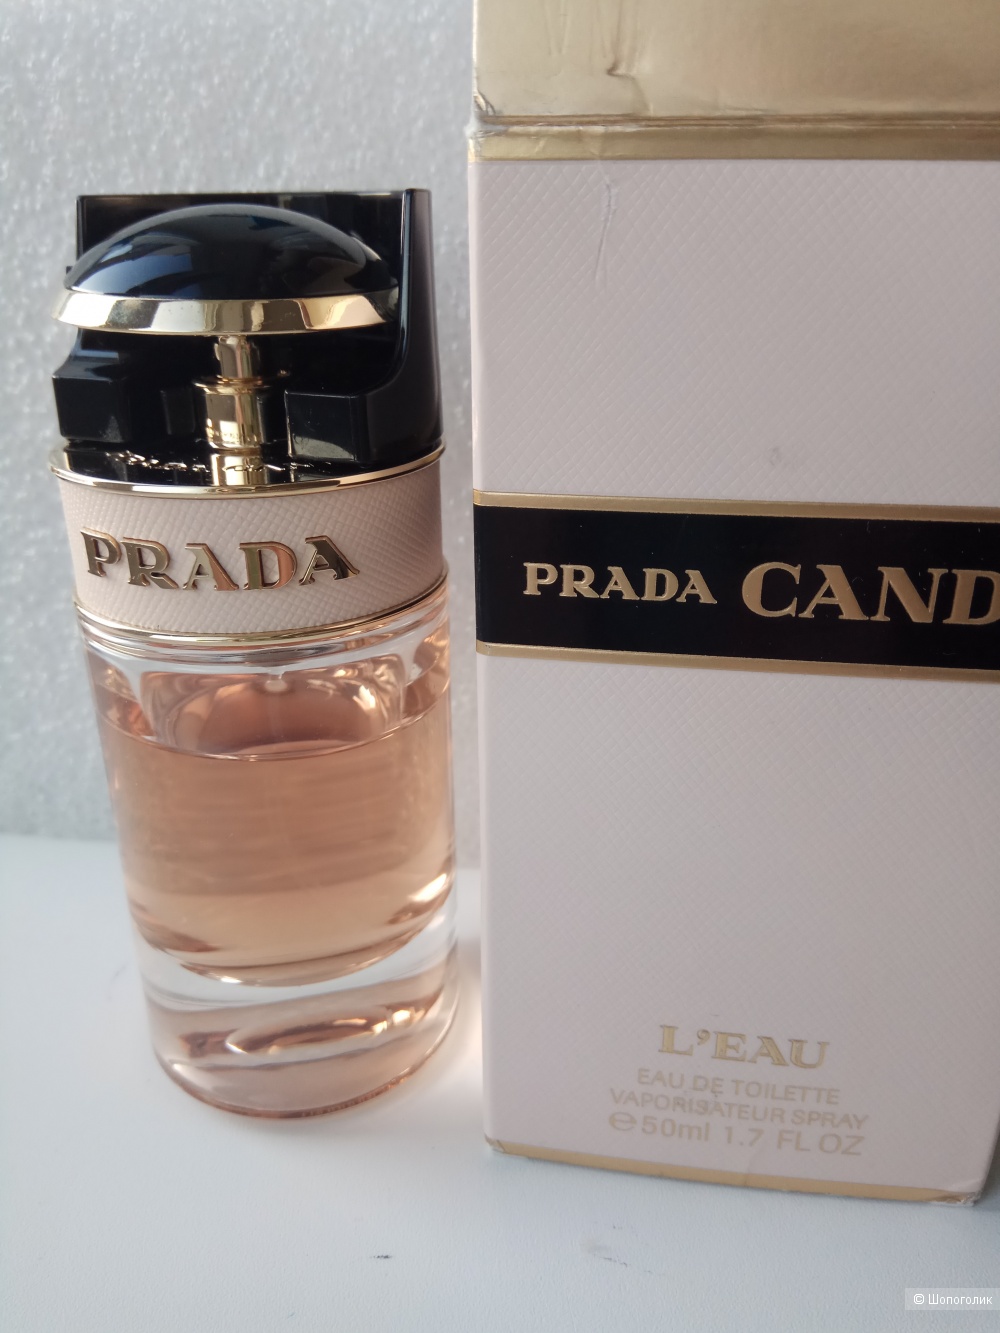 Prada Candy L'eau(edt,флакон 50 мл)